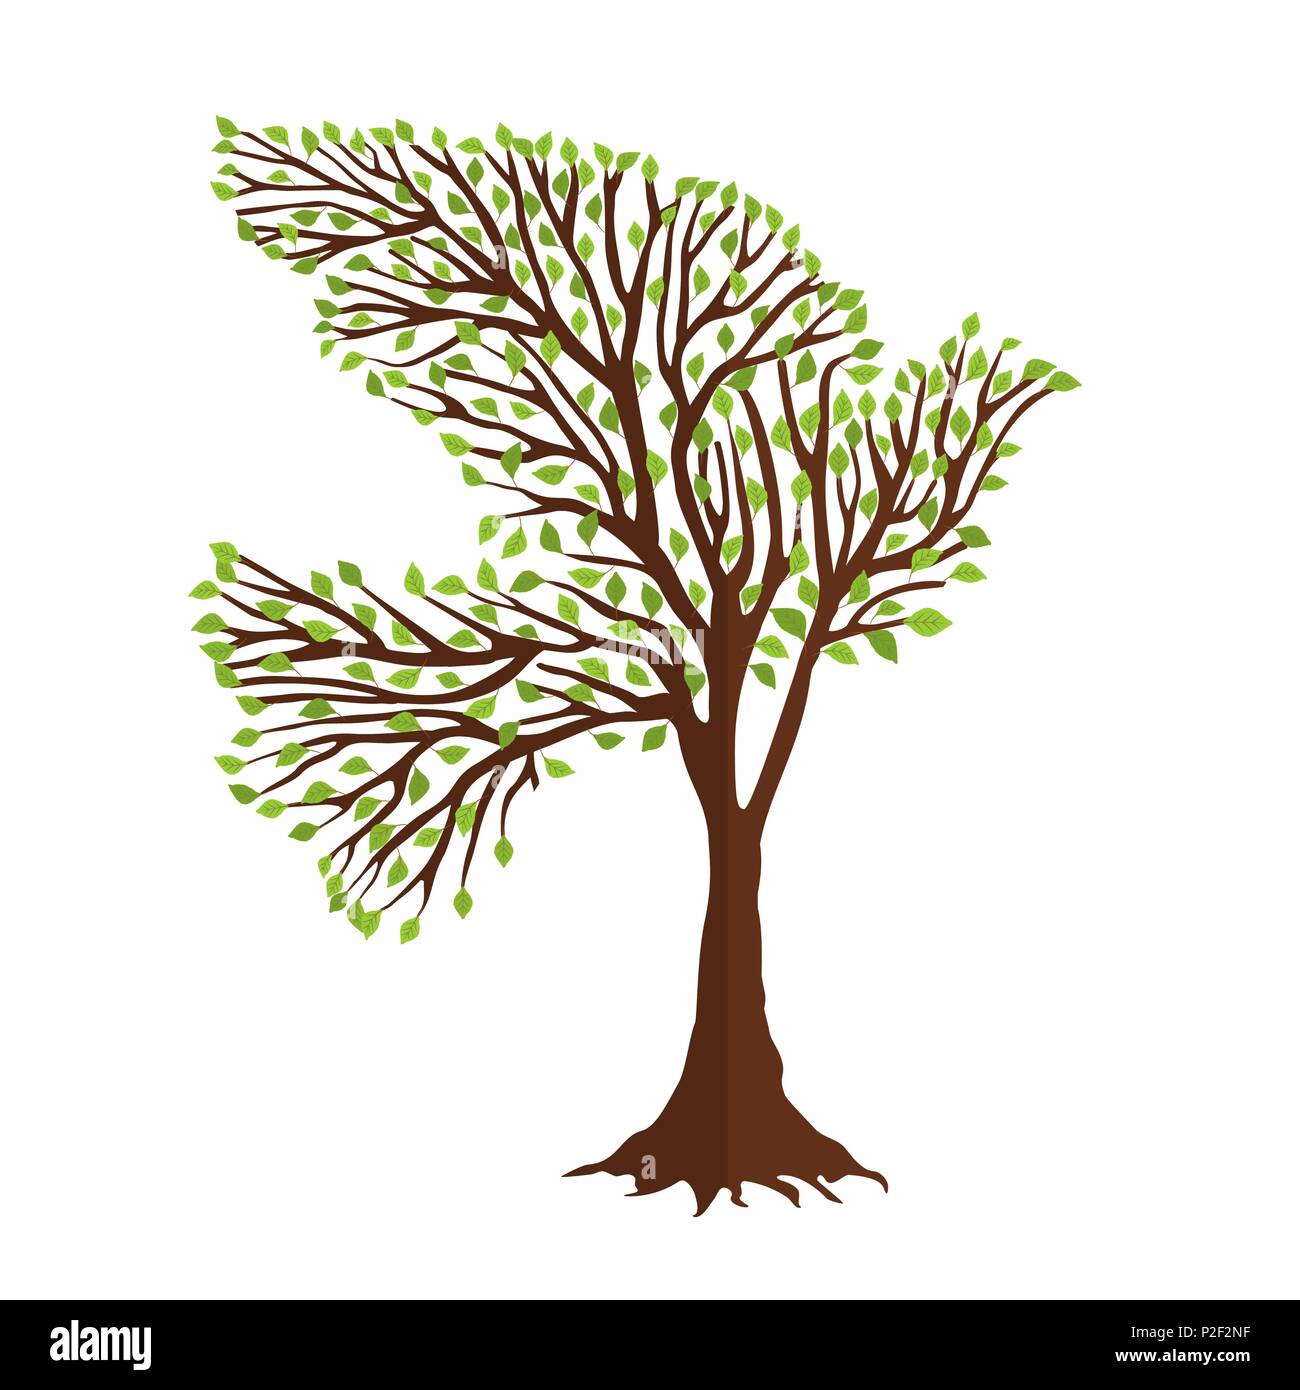 Baum mit grünen taube vogel Form in den Filialen. Natur Hilfe Konzept, Umwelt oder Erde Pflege unterstützen. EPS 10 Vektor. Stock Vektor